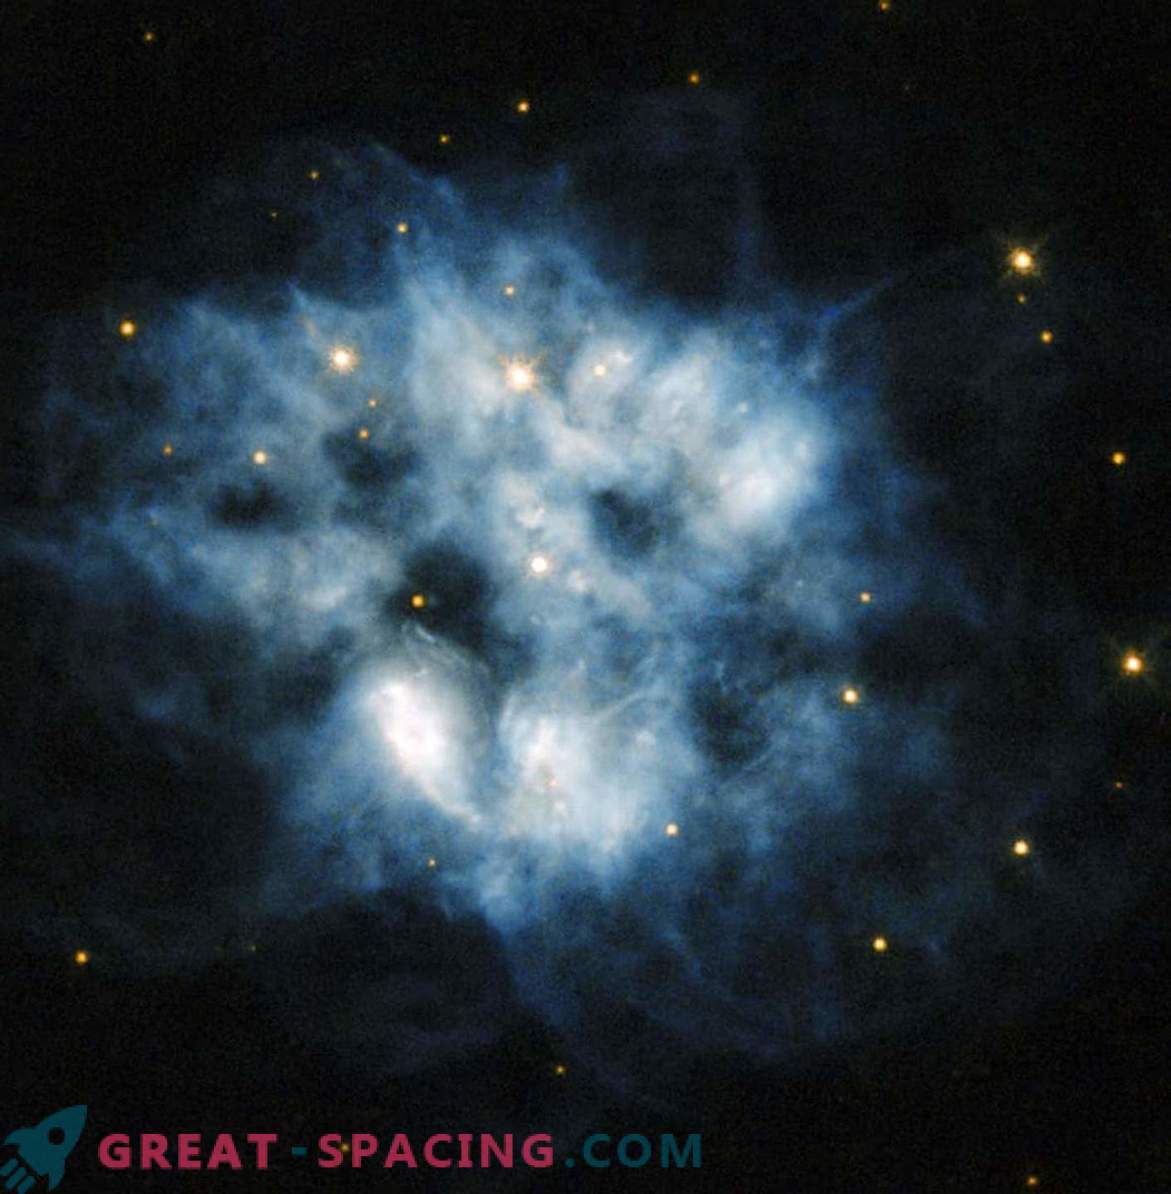 Ostanki supernove z močnim toplotnim sevanjem